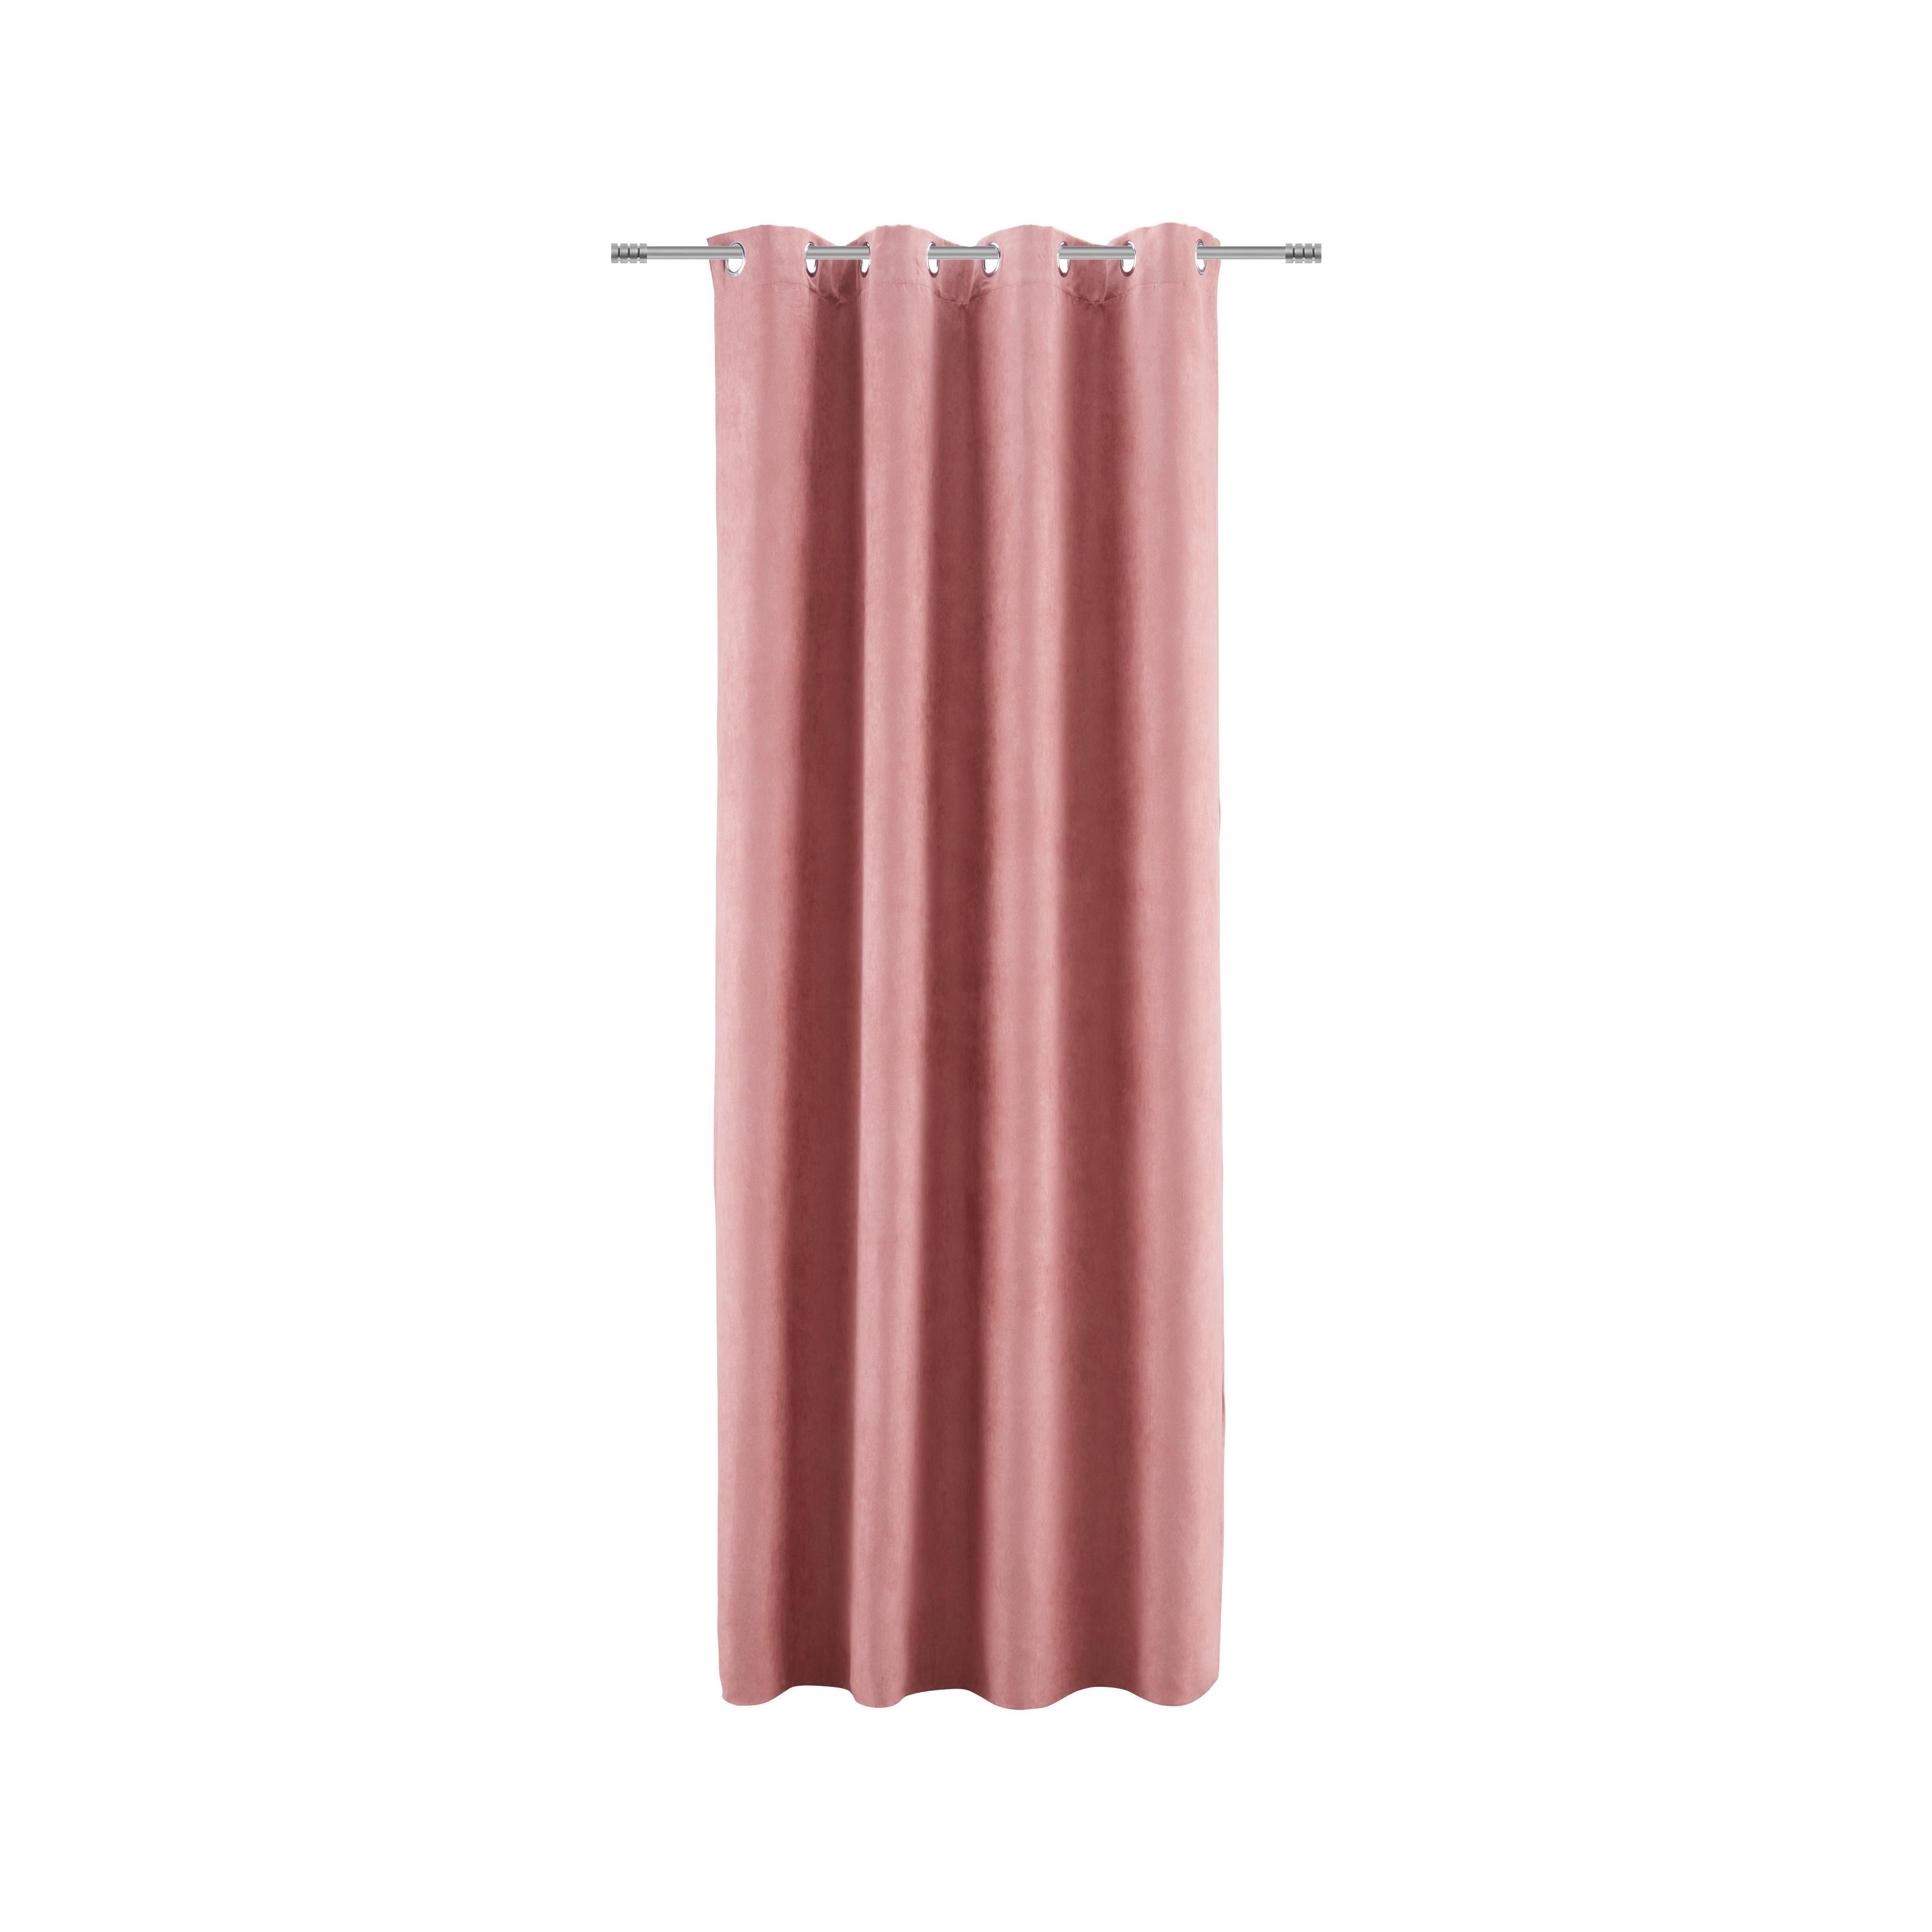 Závěs S Očky Velours, 140/245cm, Růžová - růžová, Konvenční, textil (140/245cm) - Modern Living